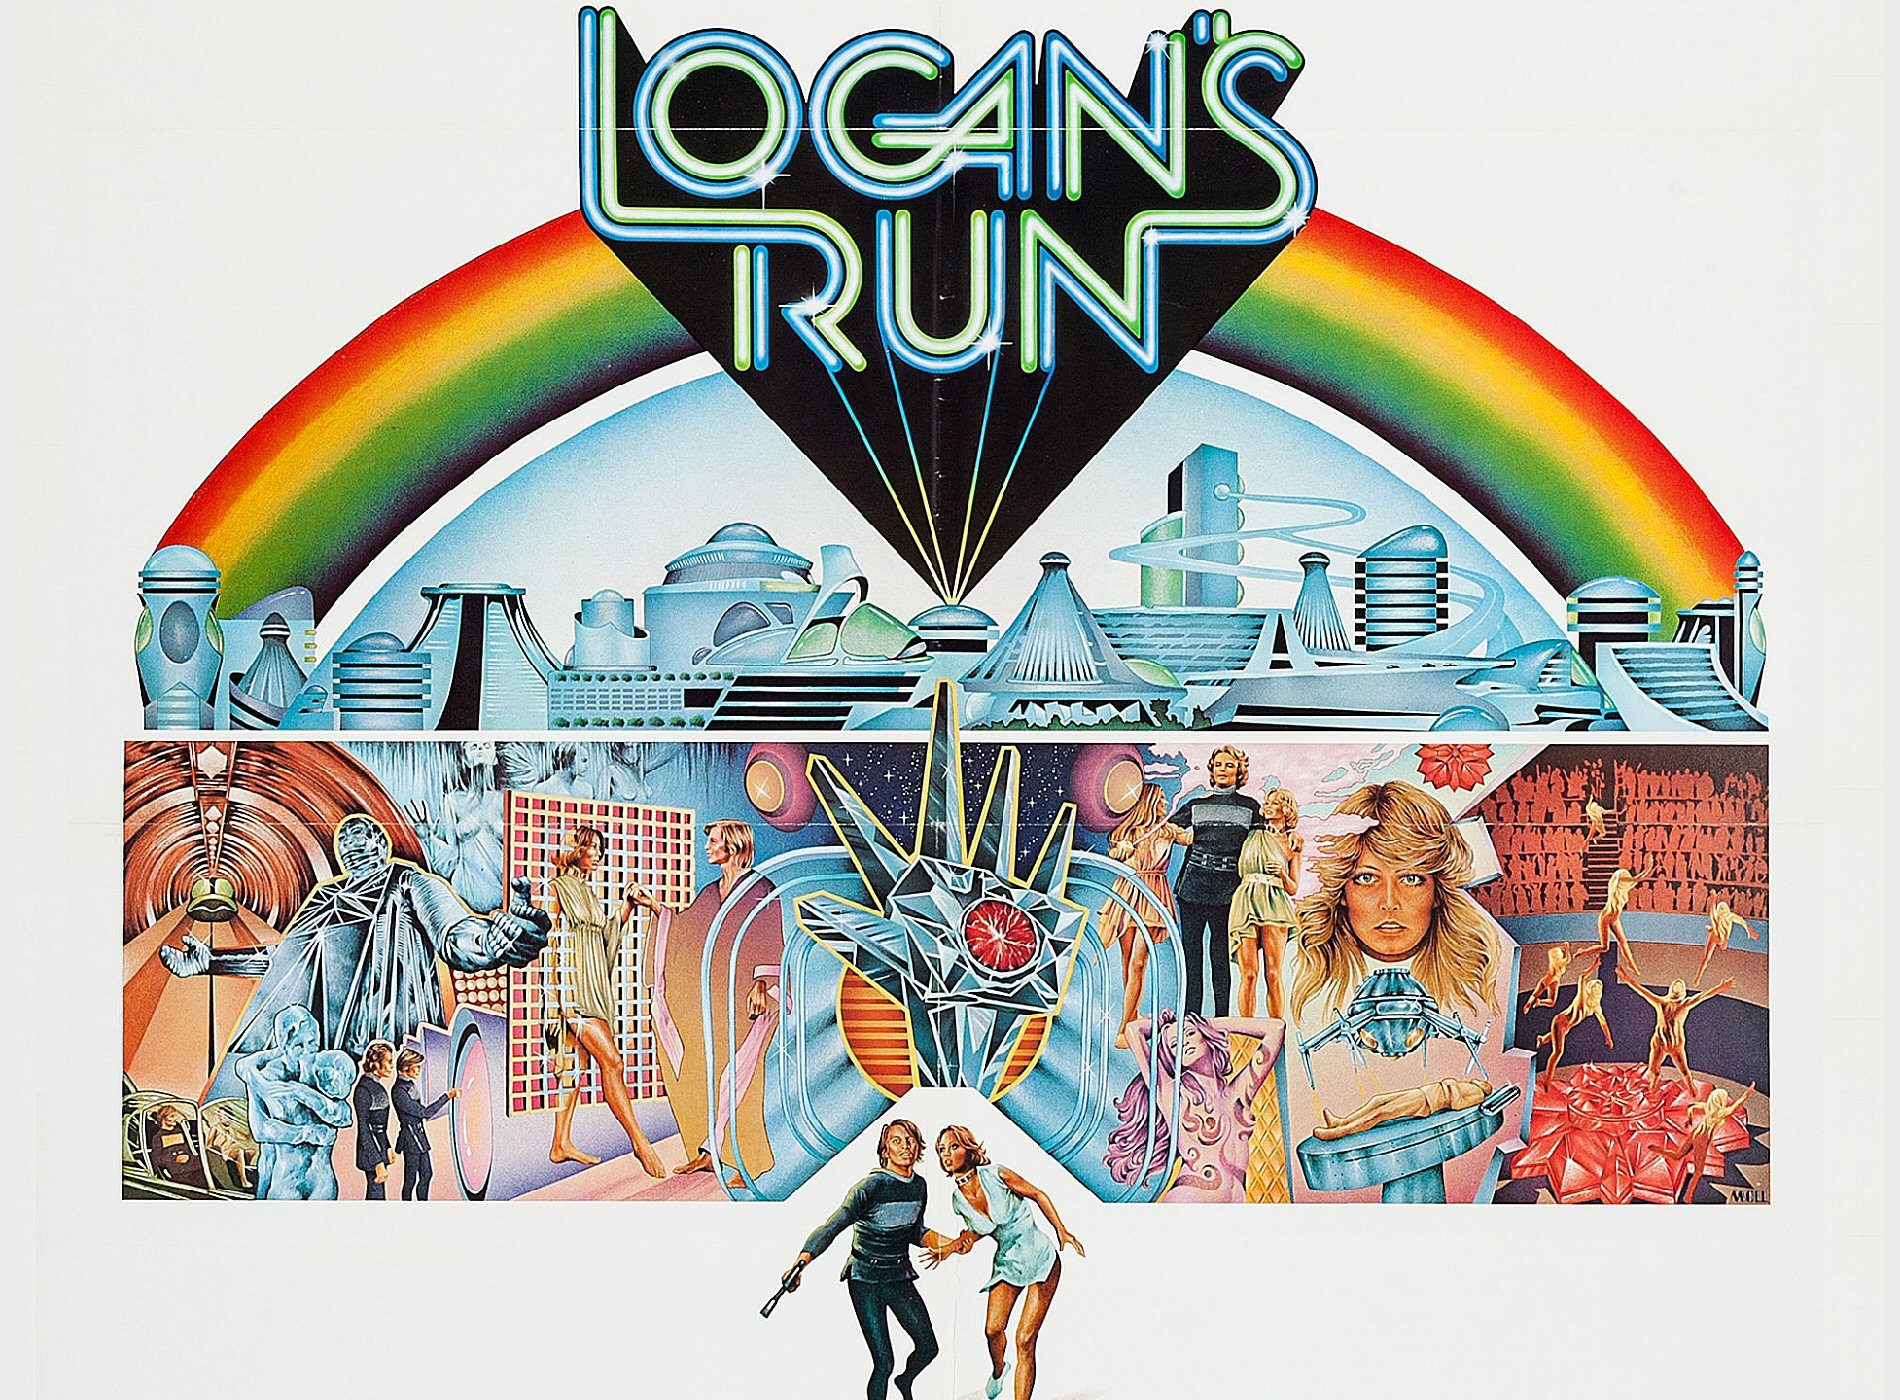 logans-run-55